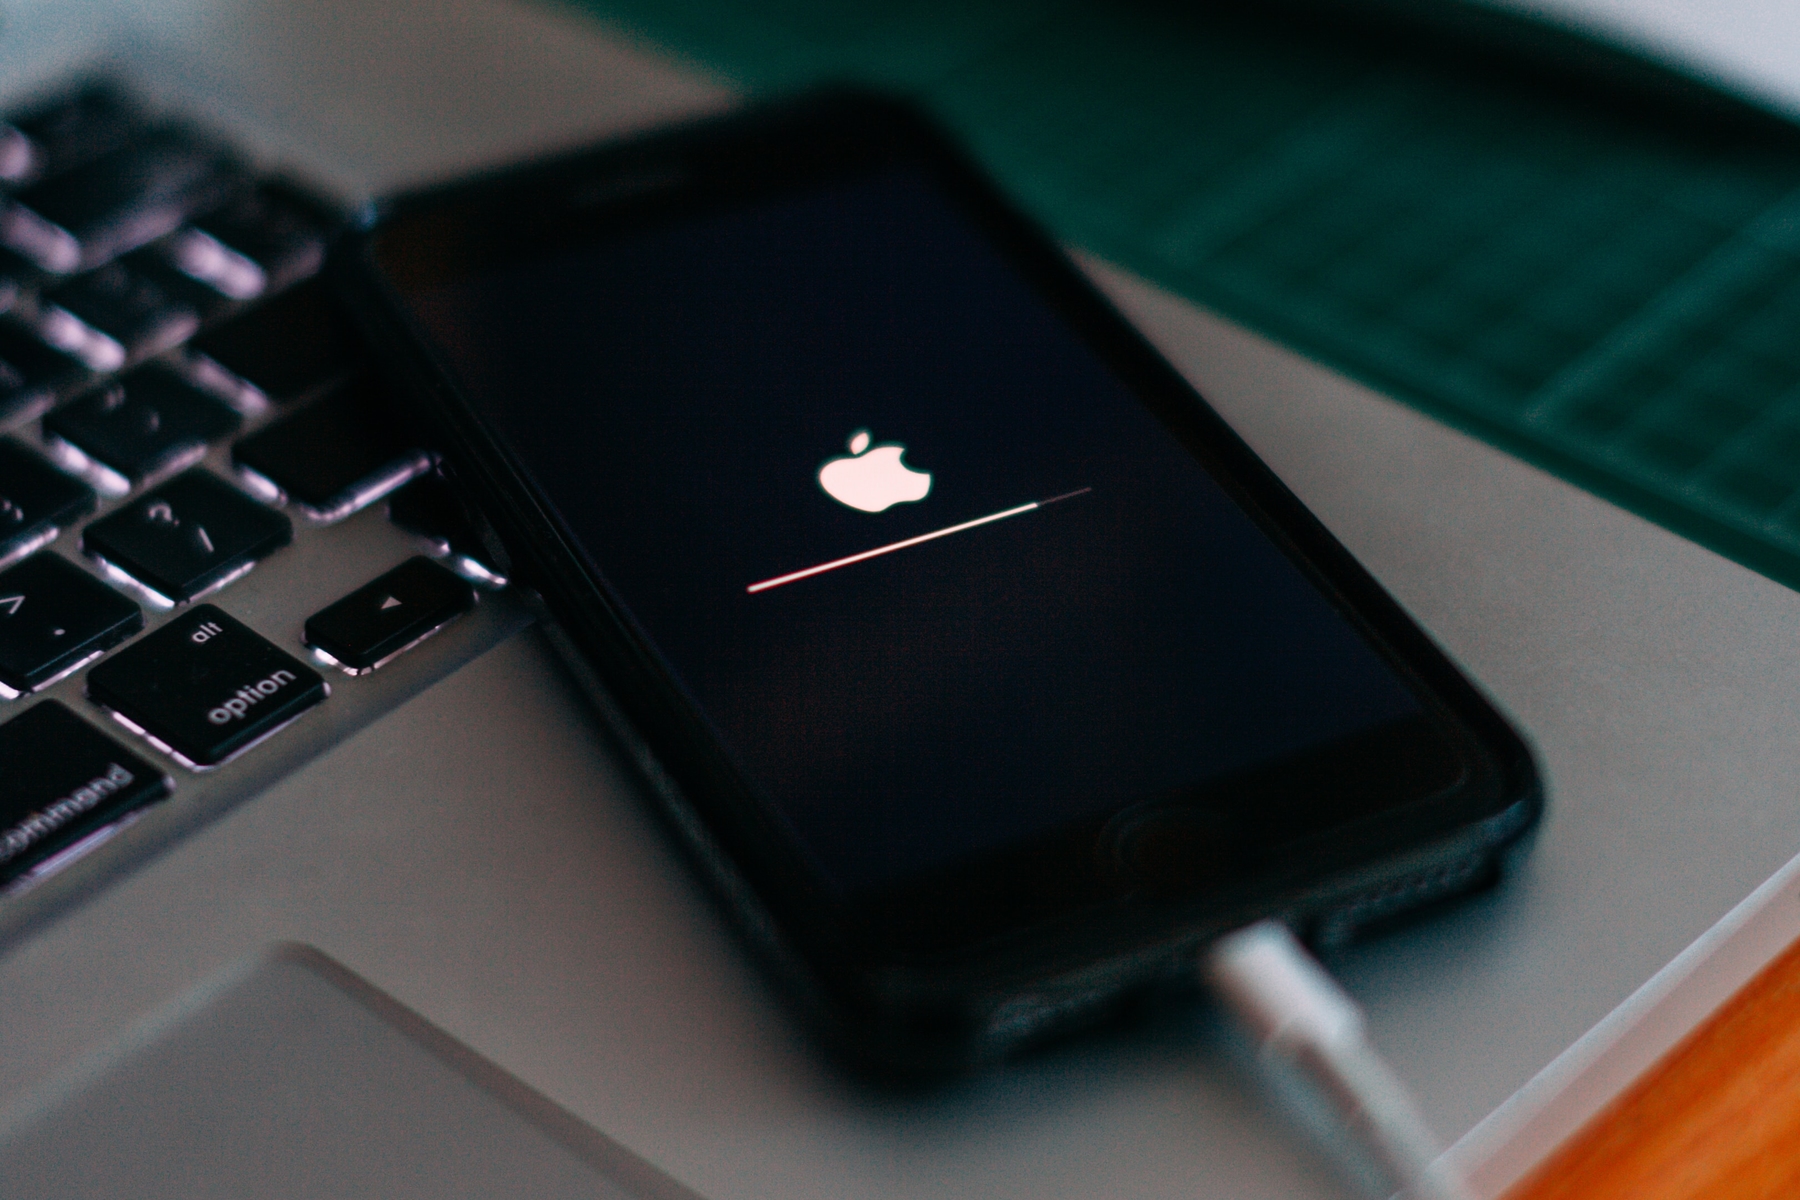 iPhone conectado encima de MacBook mostrando el logotipo de Apple durante una recuperación de actualización de software.